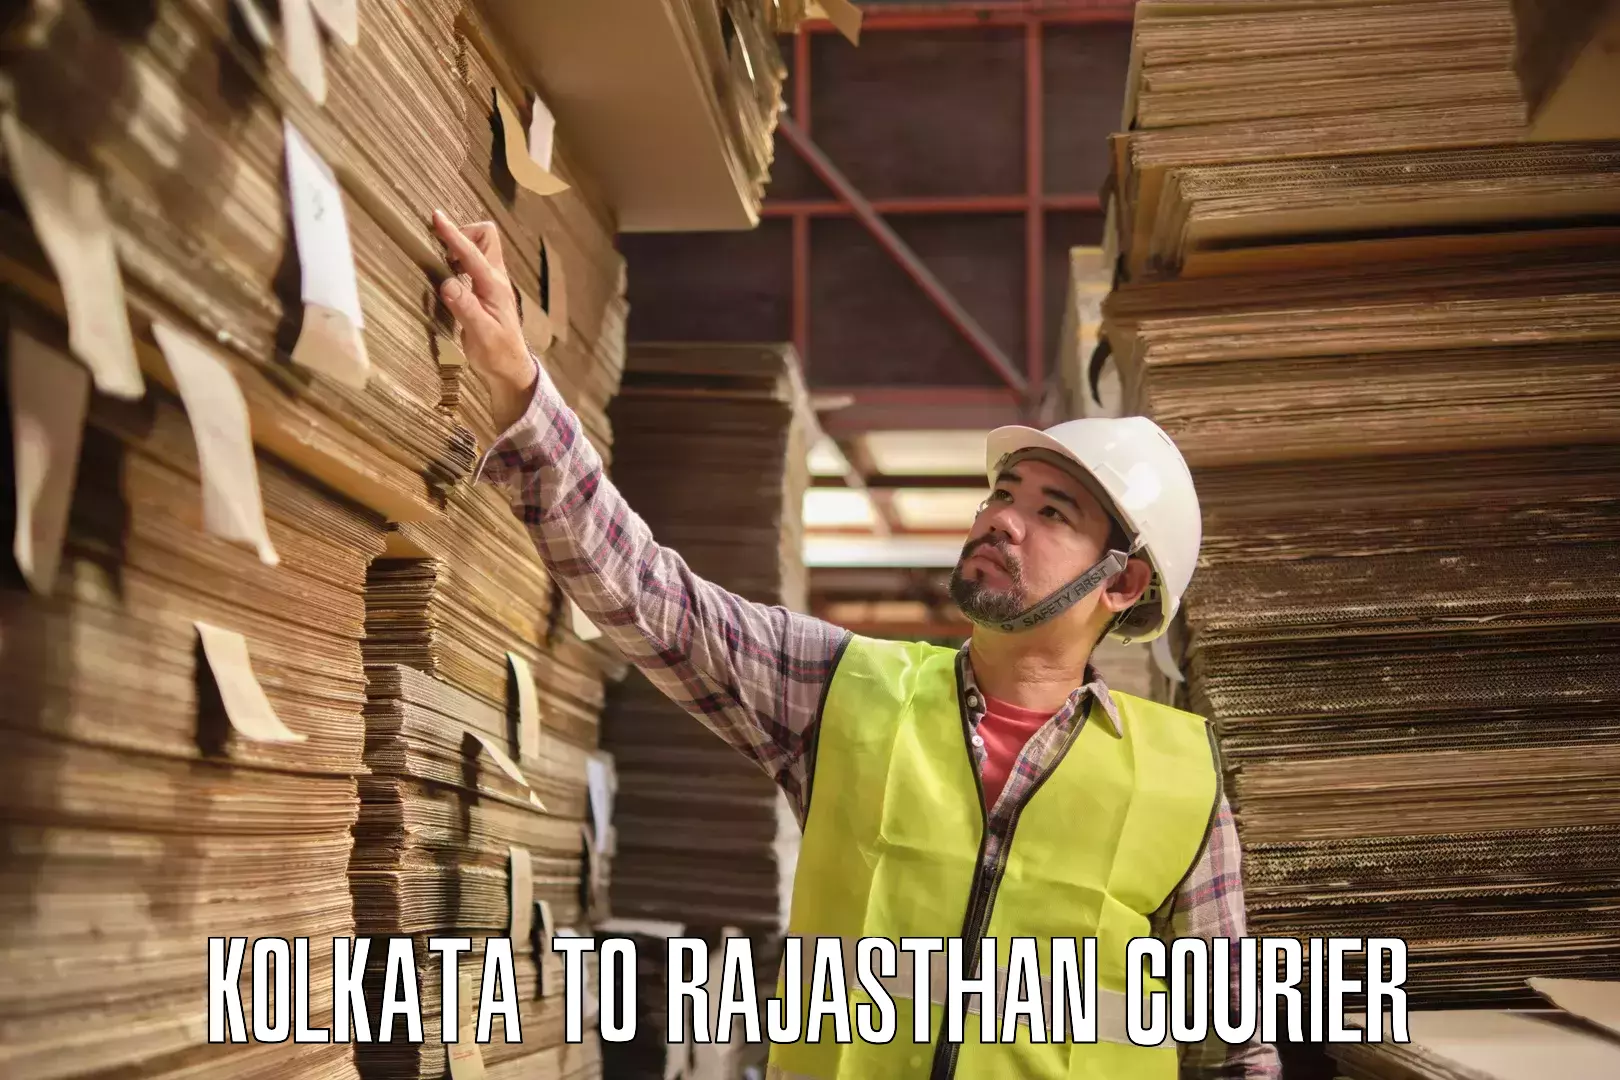 Efficient shipping operations Kolkata to Rajasthan